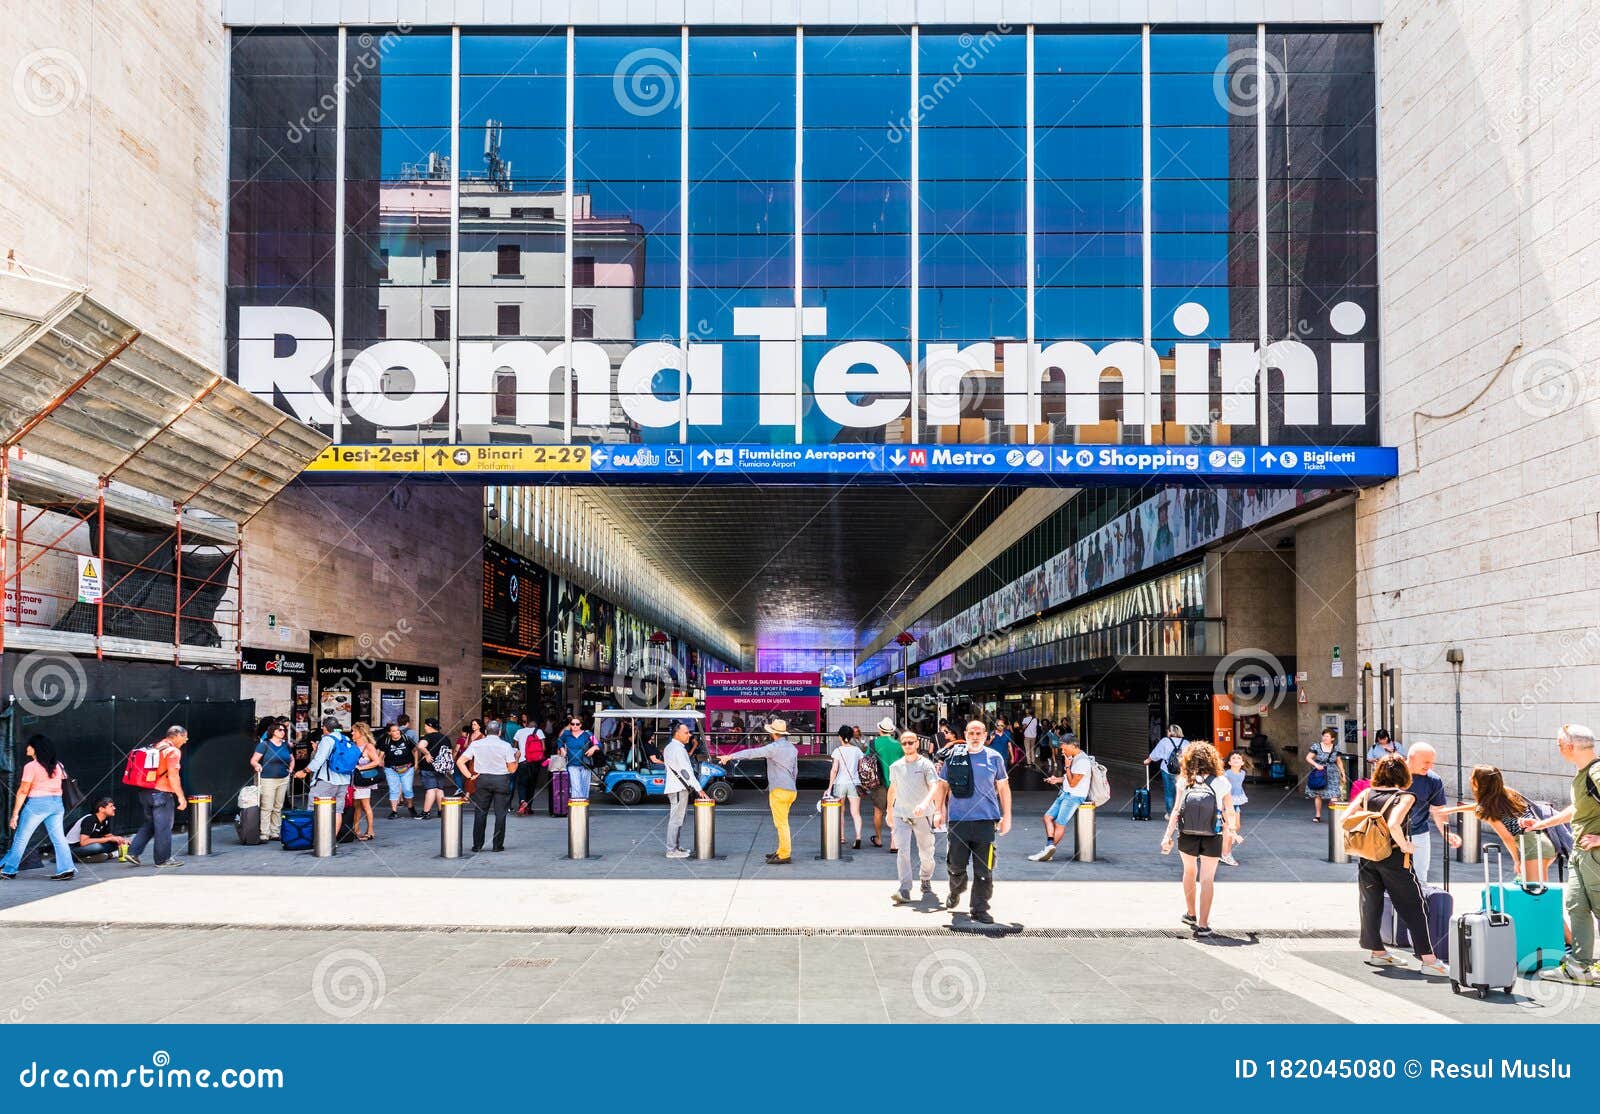 ROME TERMINI TRAIN STATION In Rome. Editorial Image